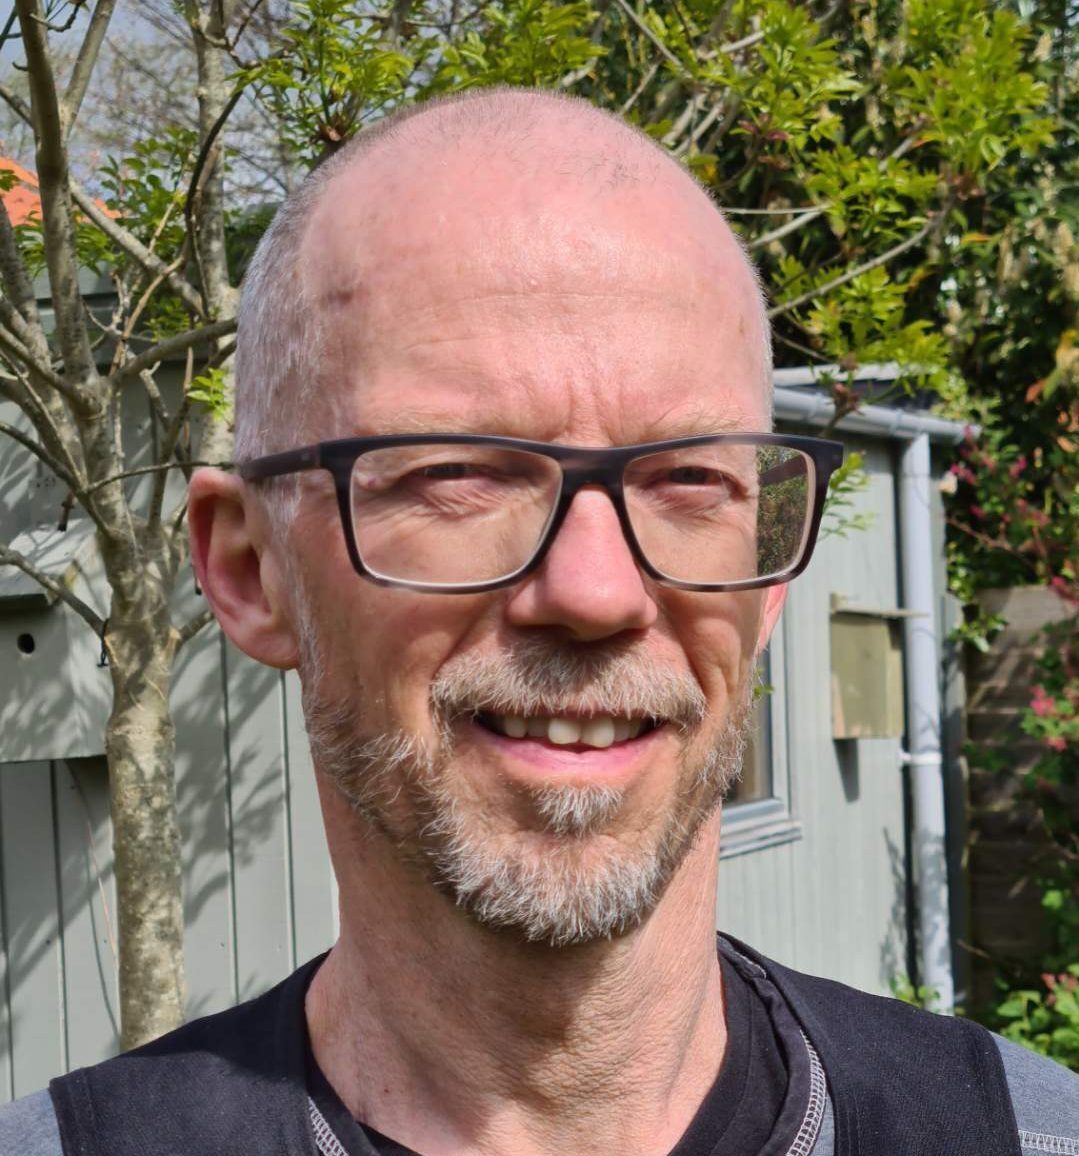 Handyman og haveservice - Birger Holmgaard i Rønde